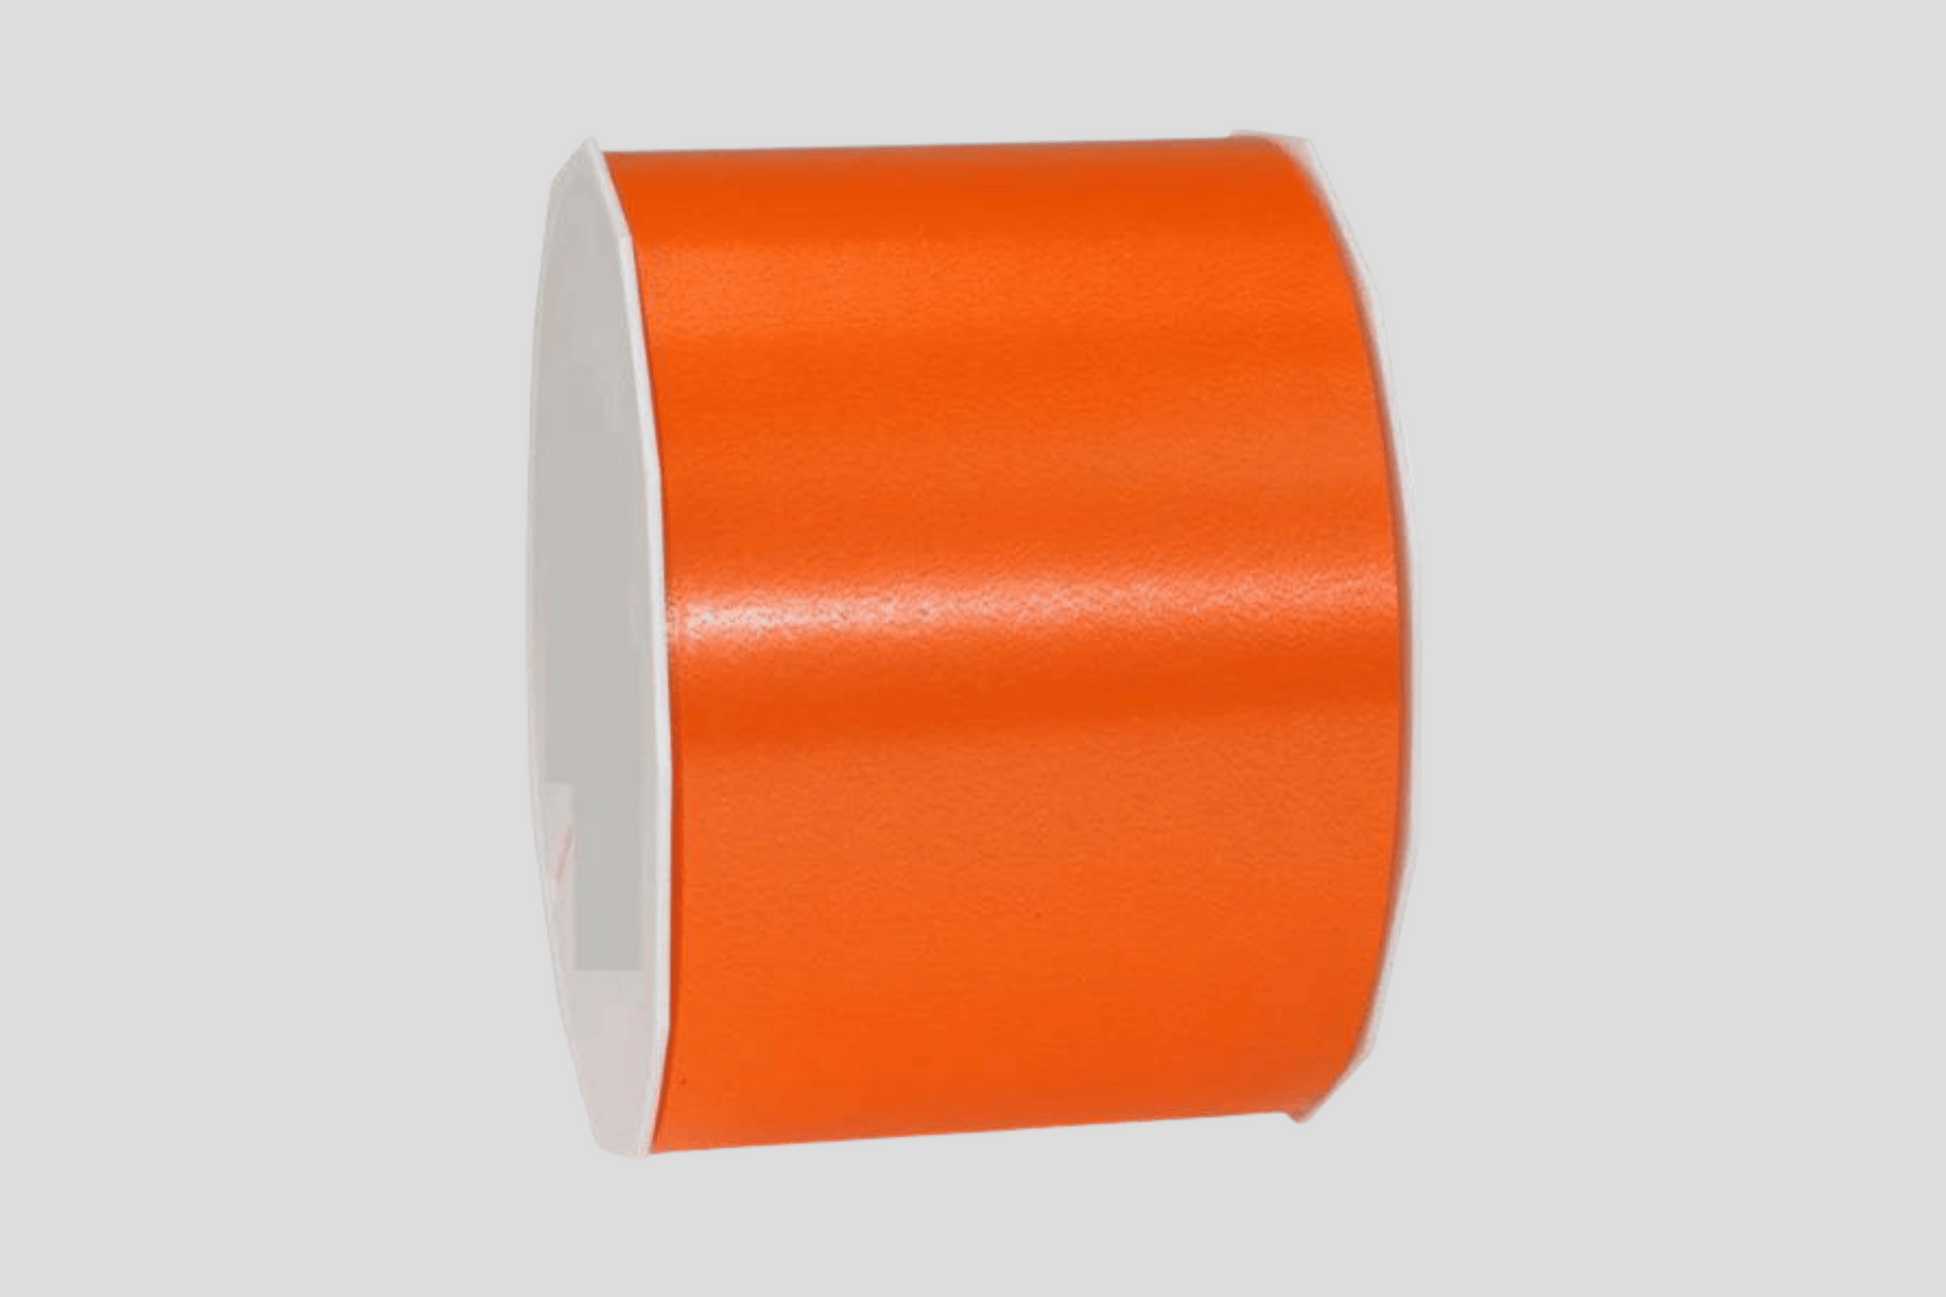 Rubans d'inauguration colorés sans ruban imprimé bande jm ch orange